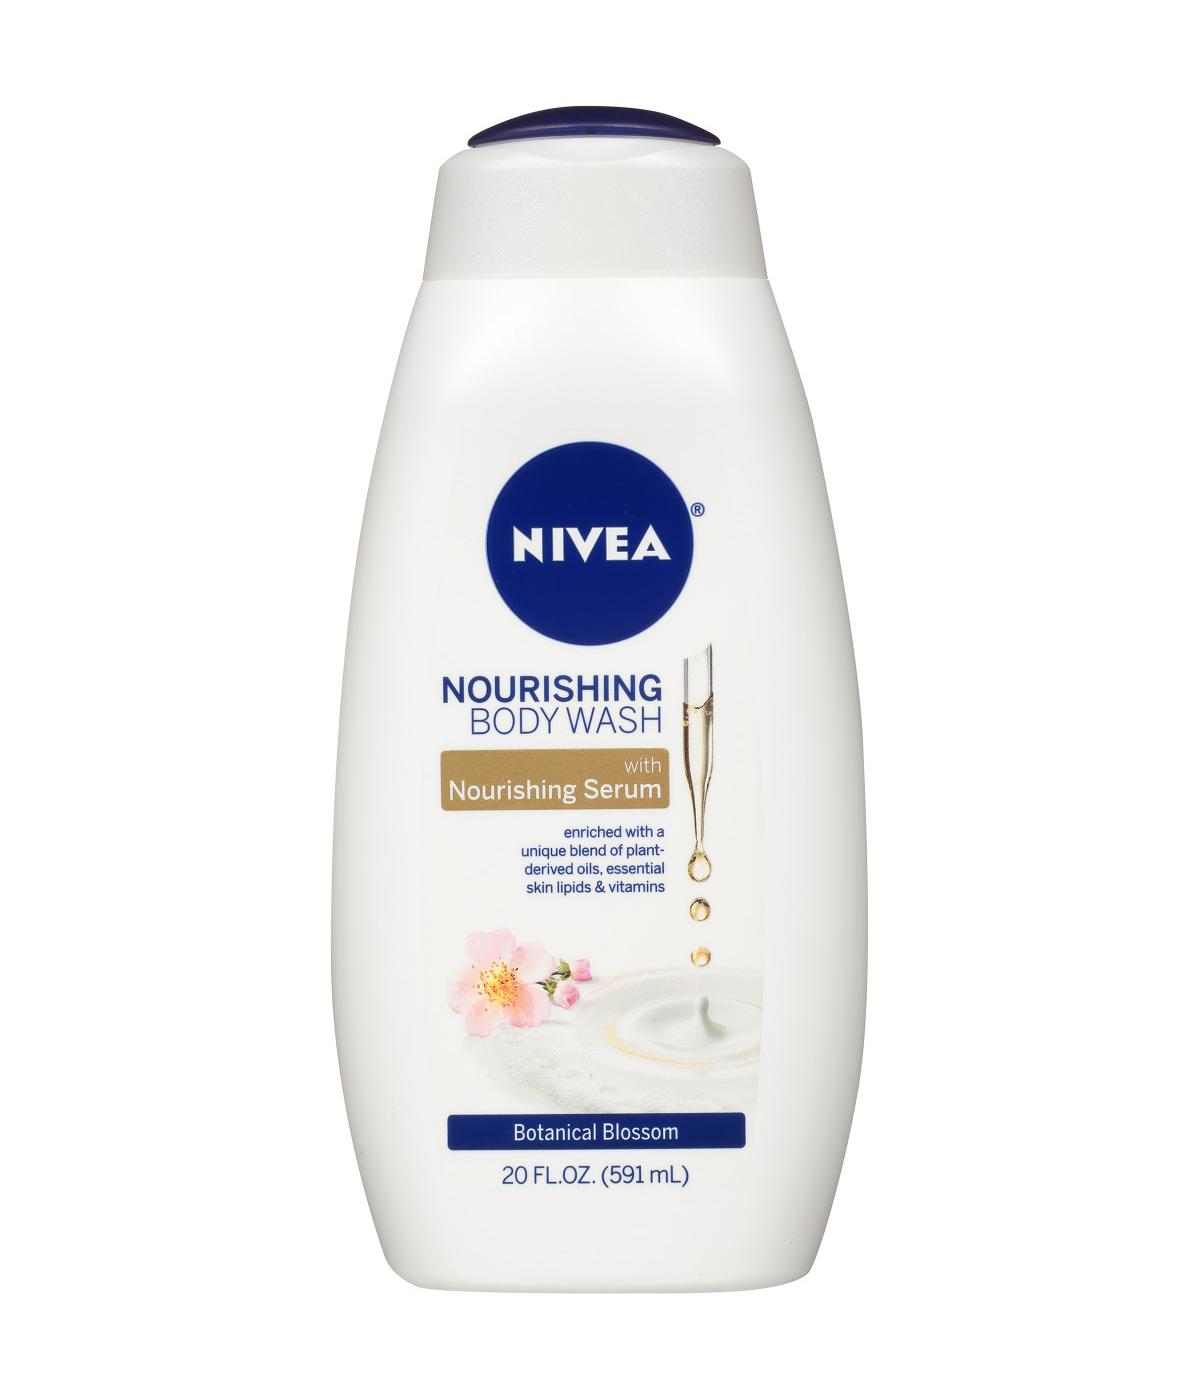 NIVEA Nourishing Body Wash - Botanical Blossom; image 1 of 4